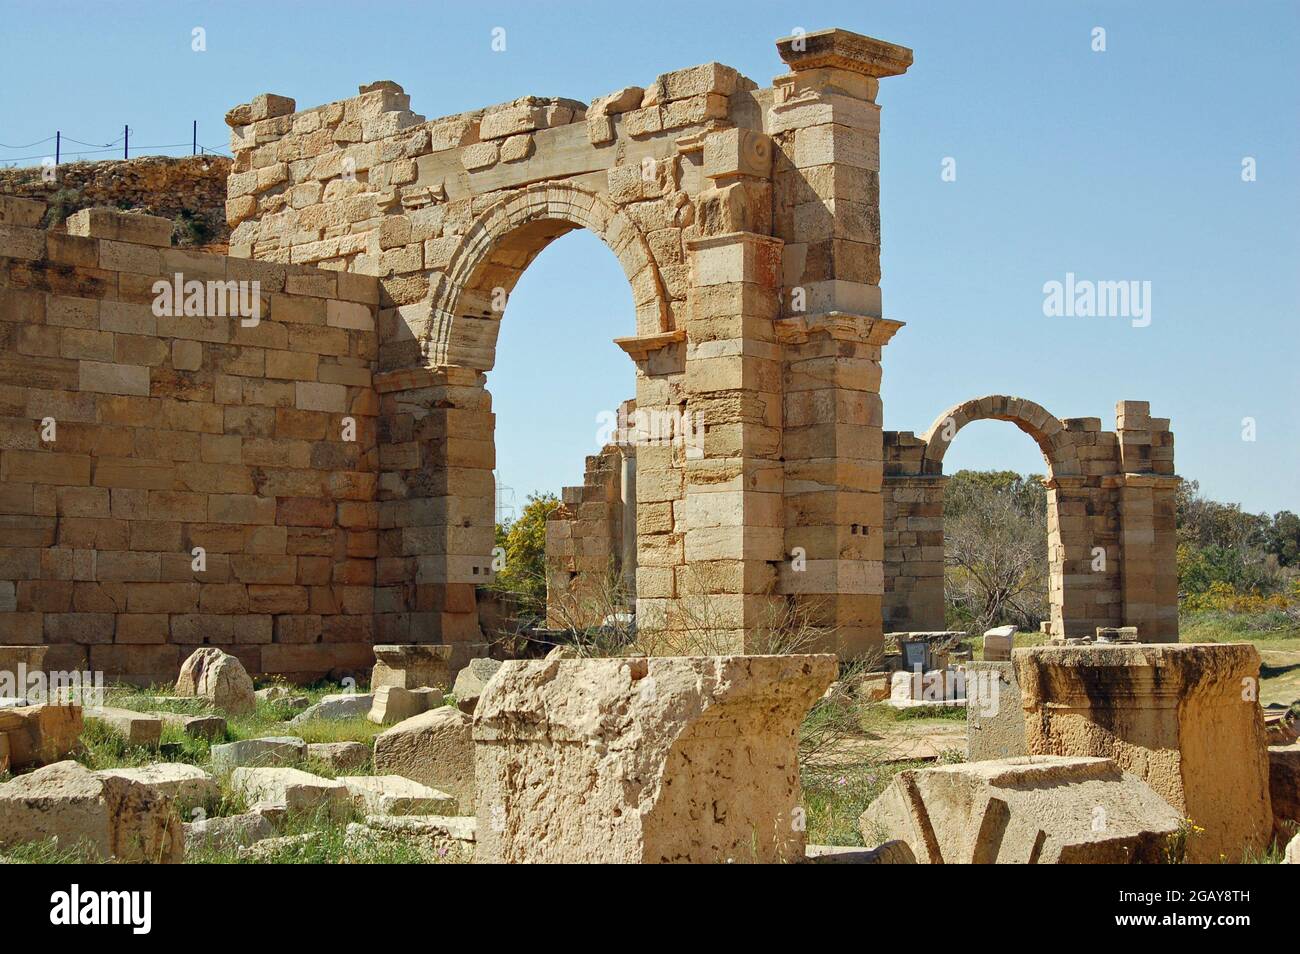 Archi in pietra, di migliaia di anni, costruiti presso l'antica città romana di Leptis Magna, nel nord della Libia. Foto Stock